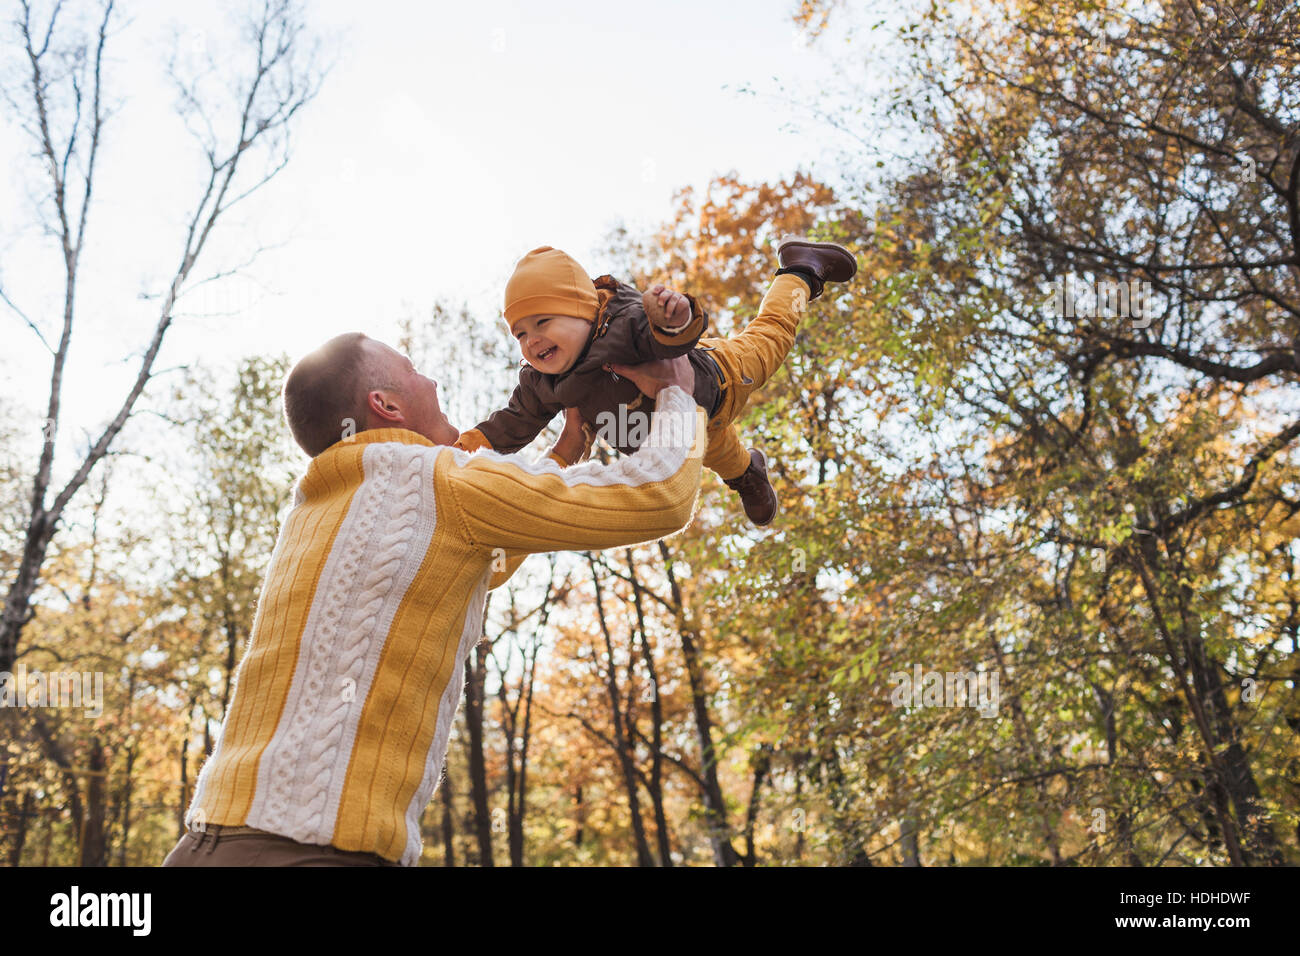 Niedrigen Winkel Ansicht des fröhlichen Menschen anheben Babyjungen am Park im Herbst Stockfoto